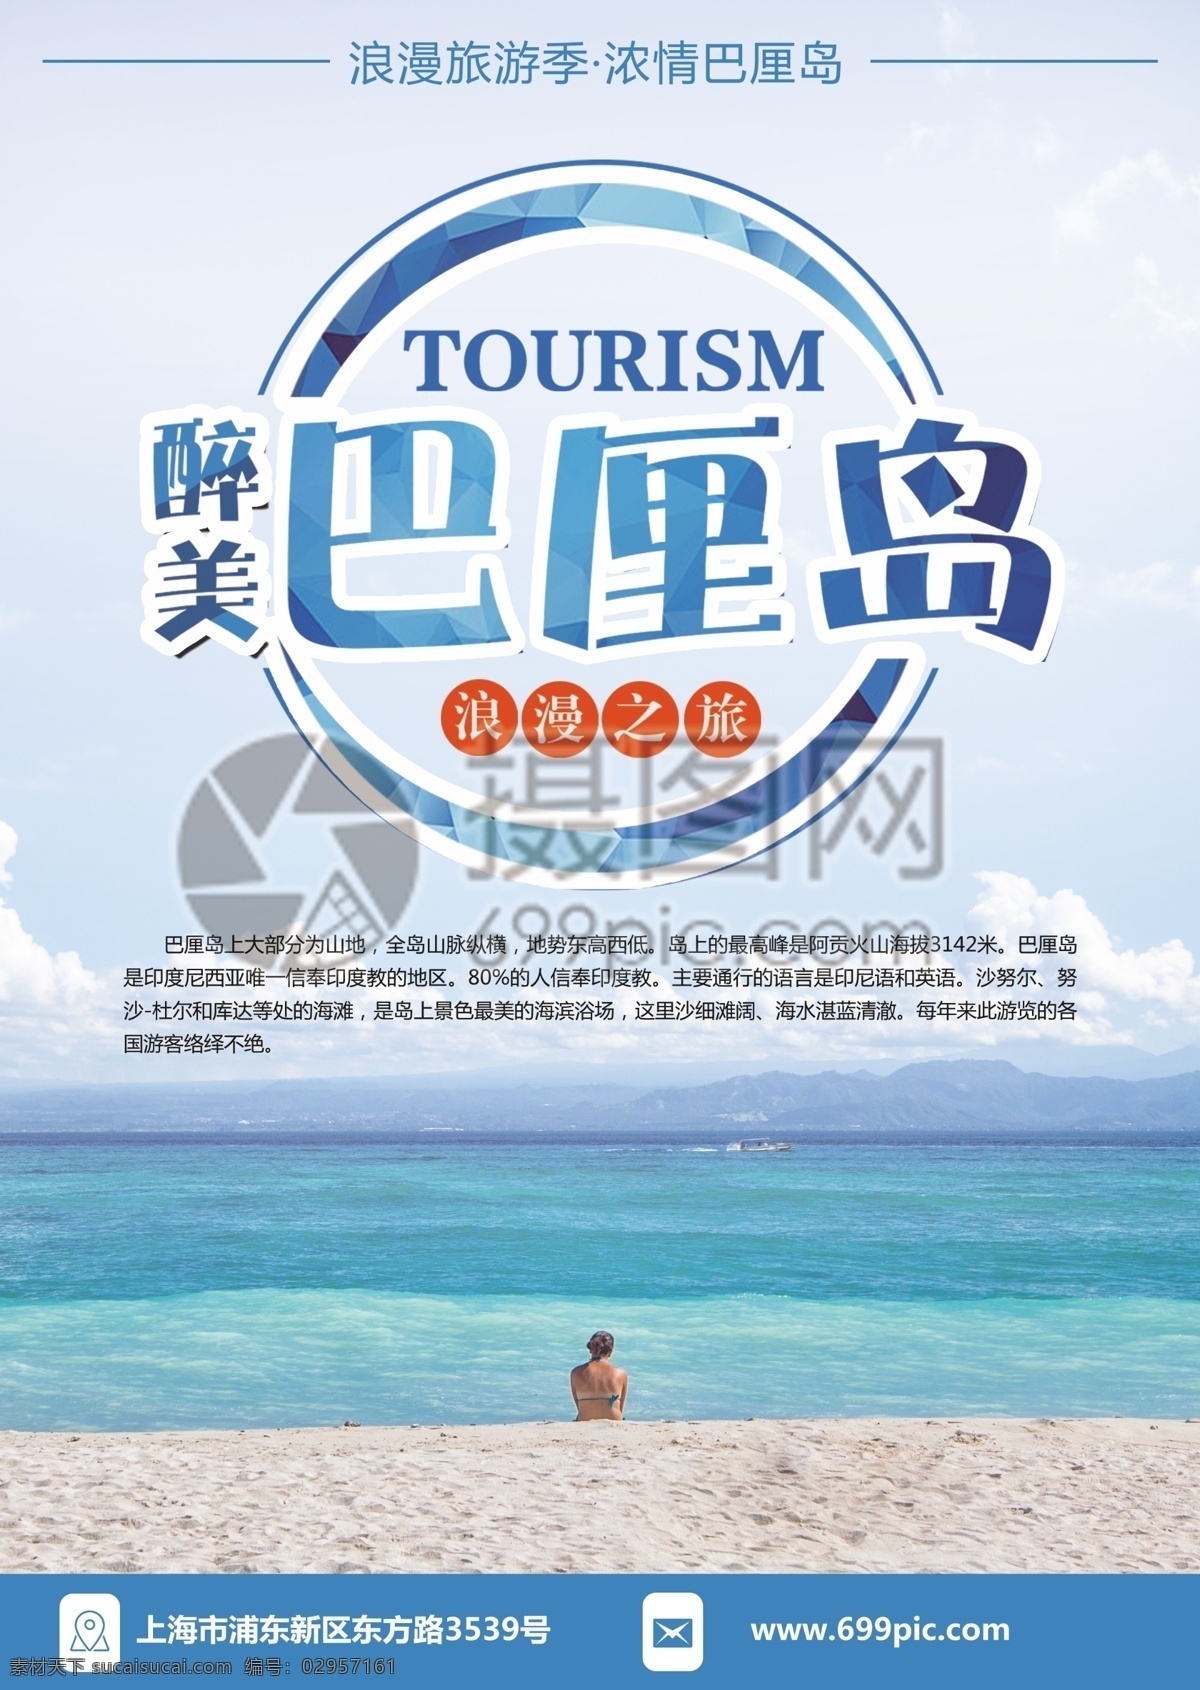 巴厘岛 旅游 宣传单 游 度假 旅游宣传 宣传单设计 假期 游玩 海岛 海边 大海 蓝色 浪漫